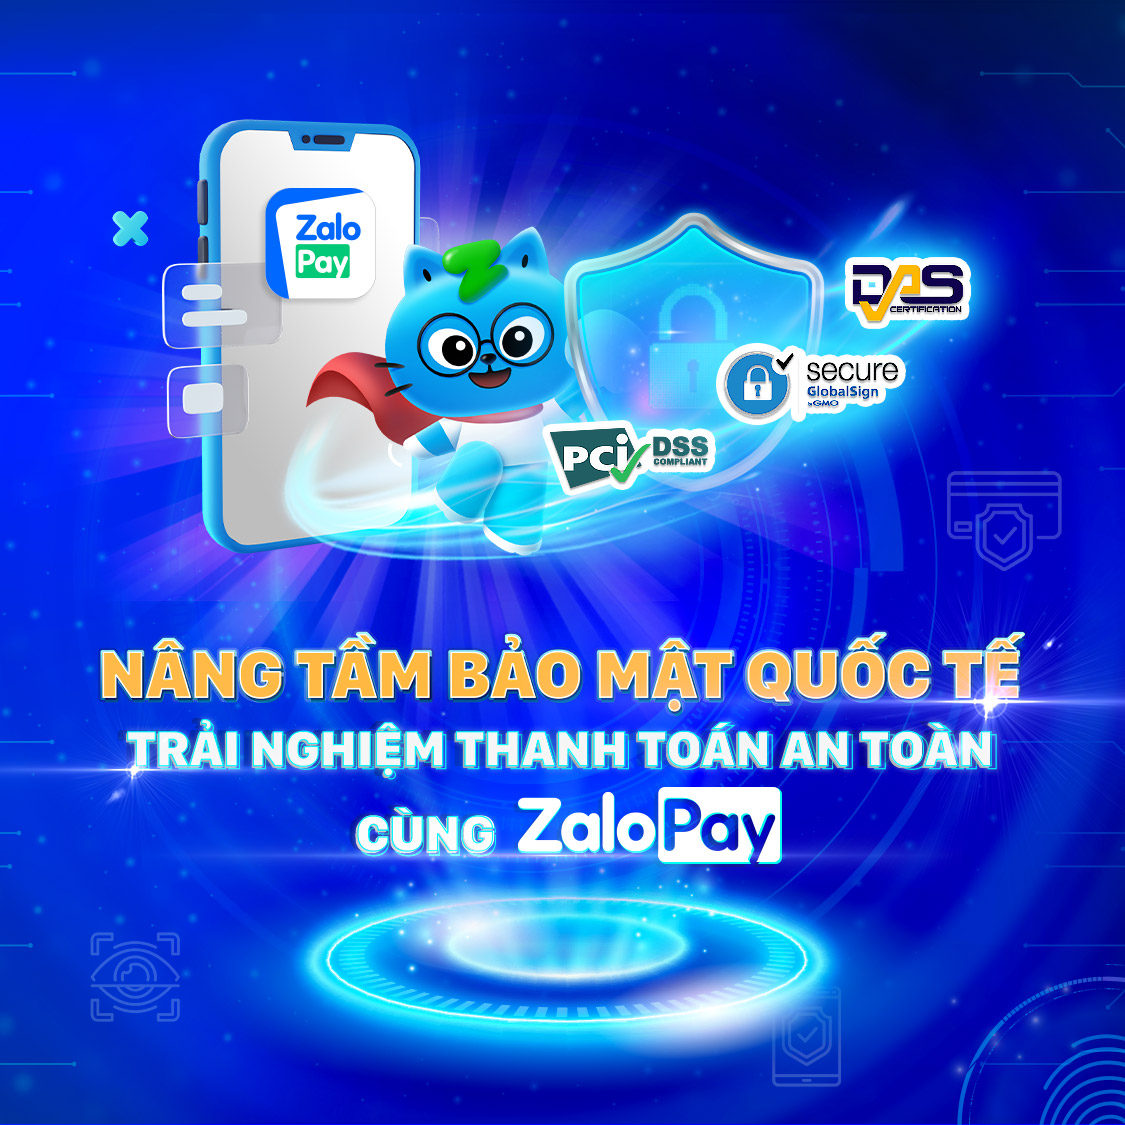 Làm cách nào để lấy lại mật khẩu Zalo Pay?